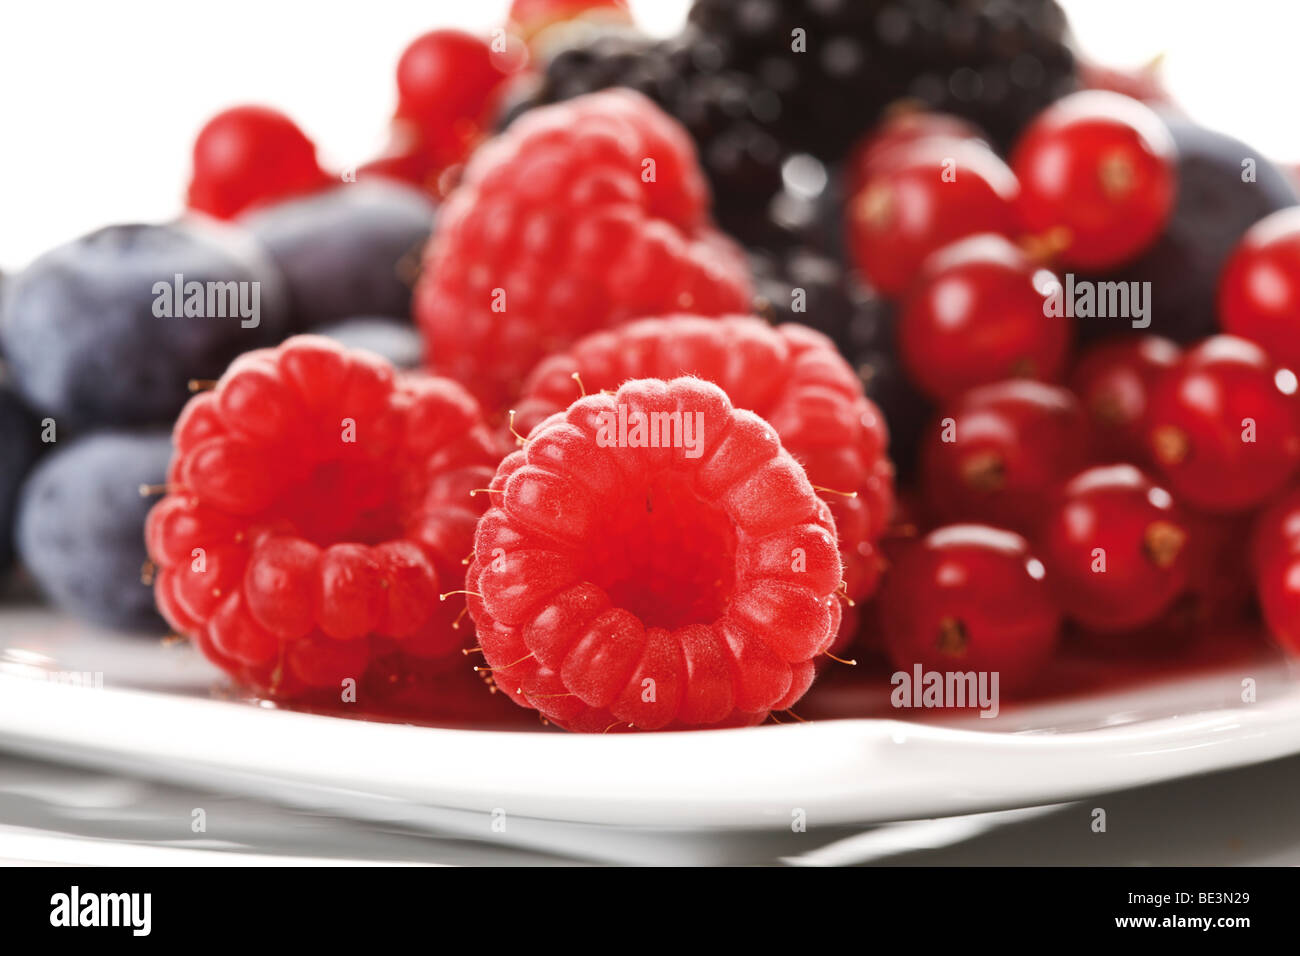 Wild berries on a plate, raspberries, blackberries, blueberries, currants Stock Photo